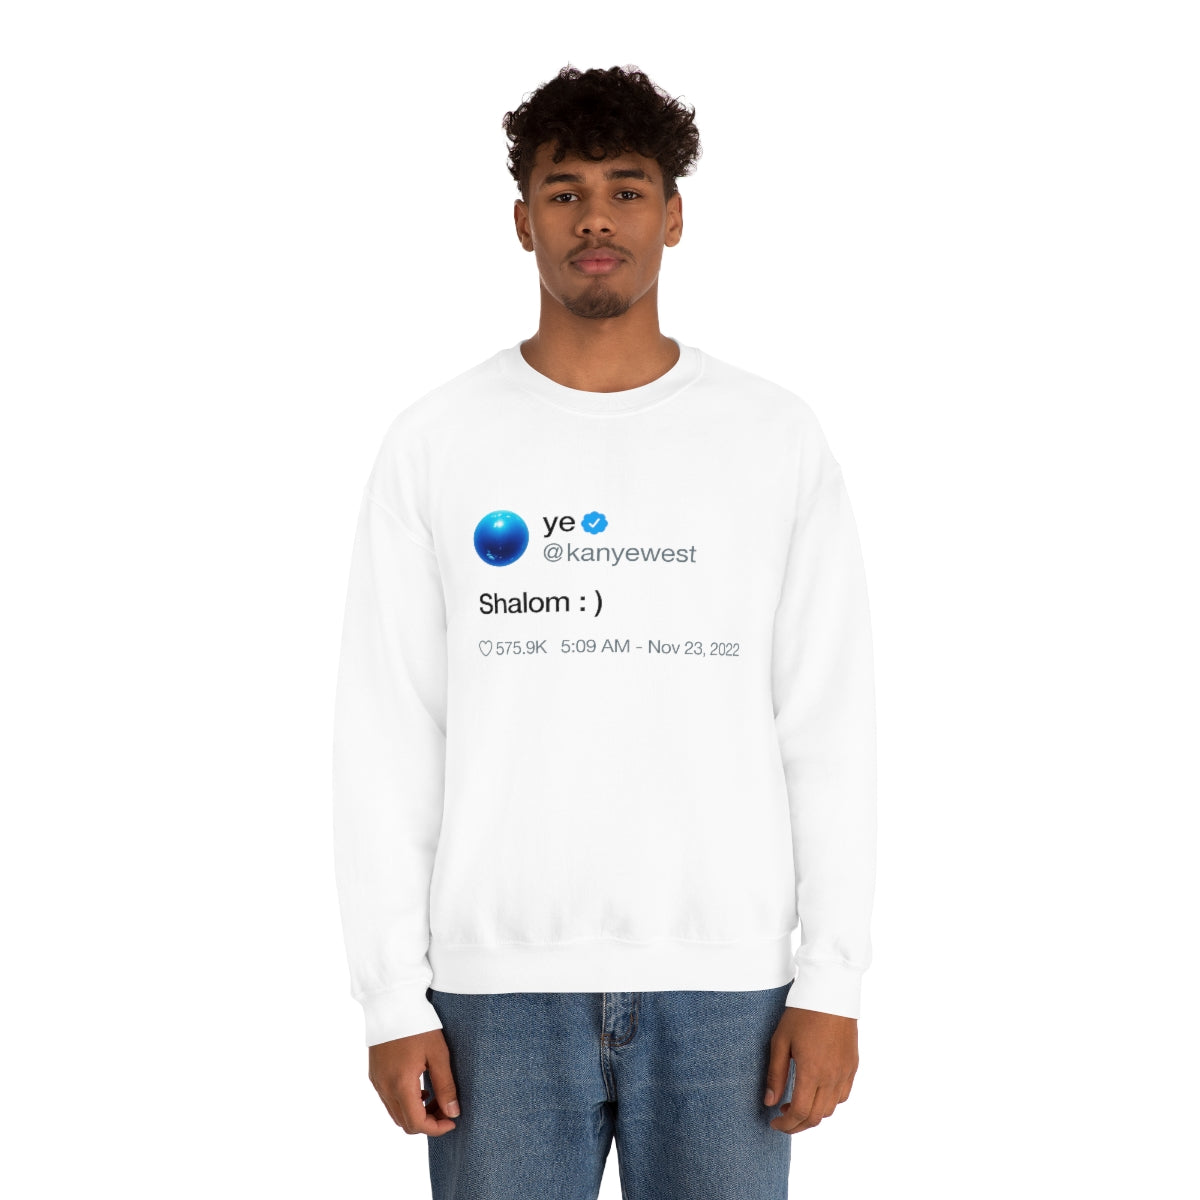 Shalom Kanye West Tweet Inspired Crewneck Sweatshirt